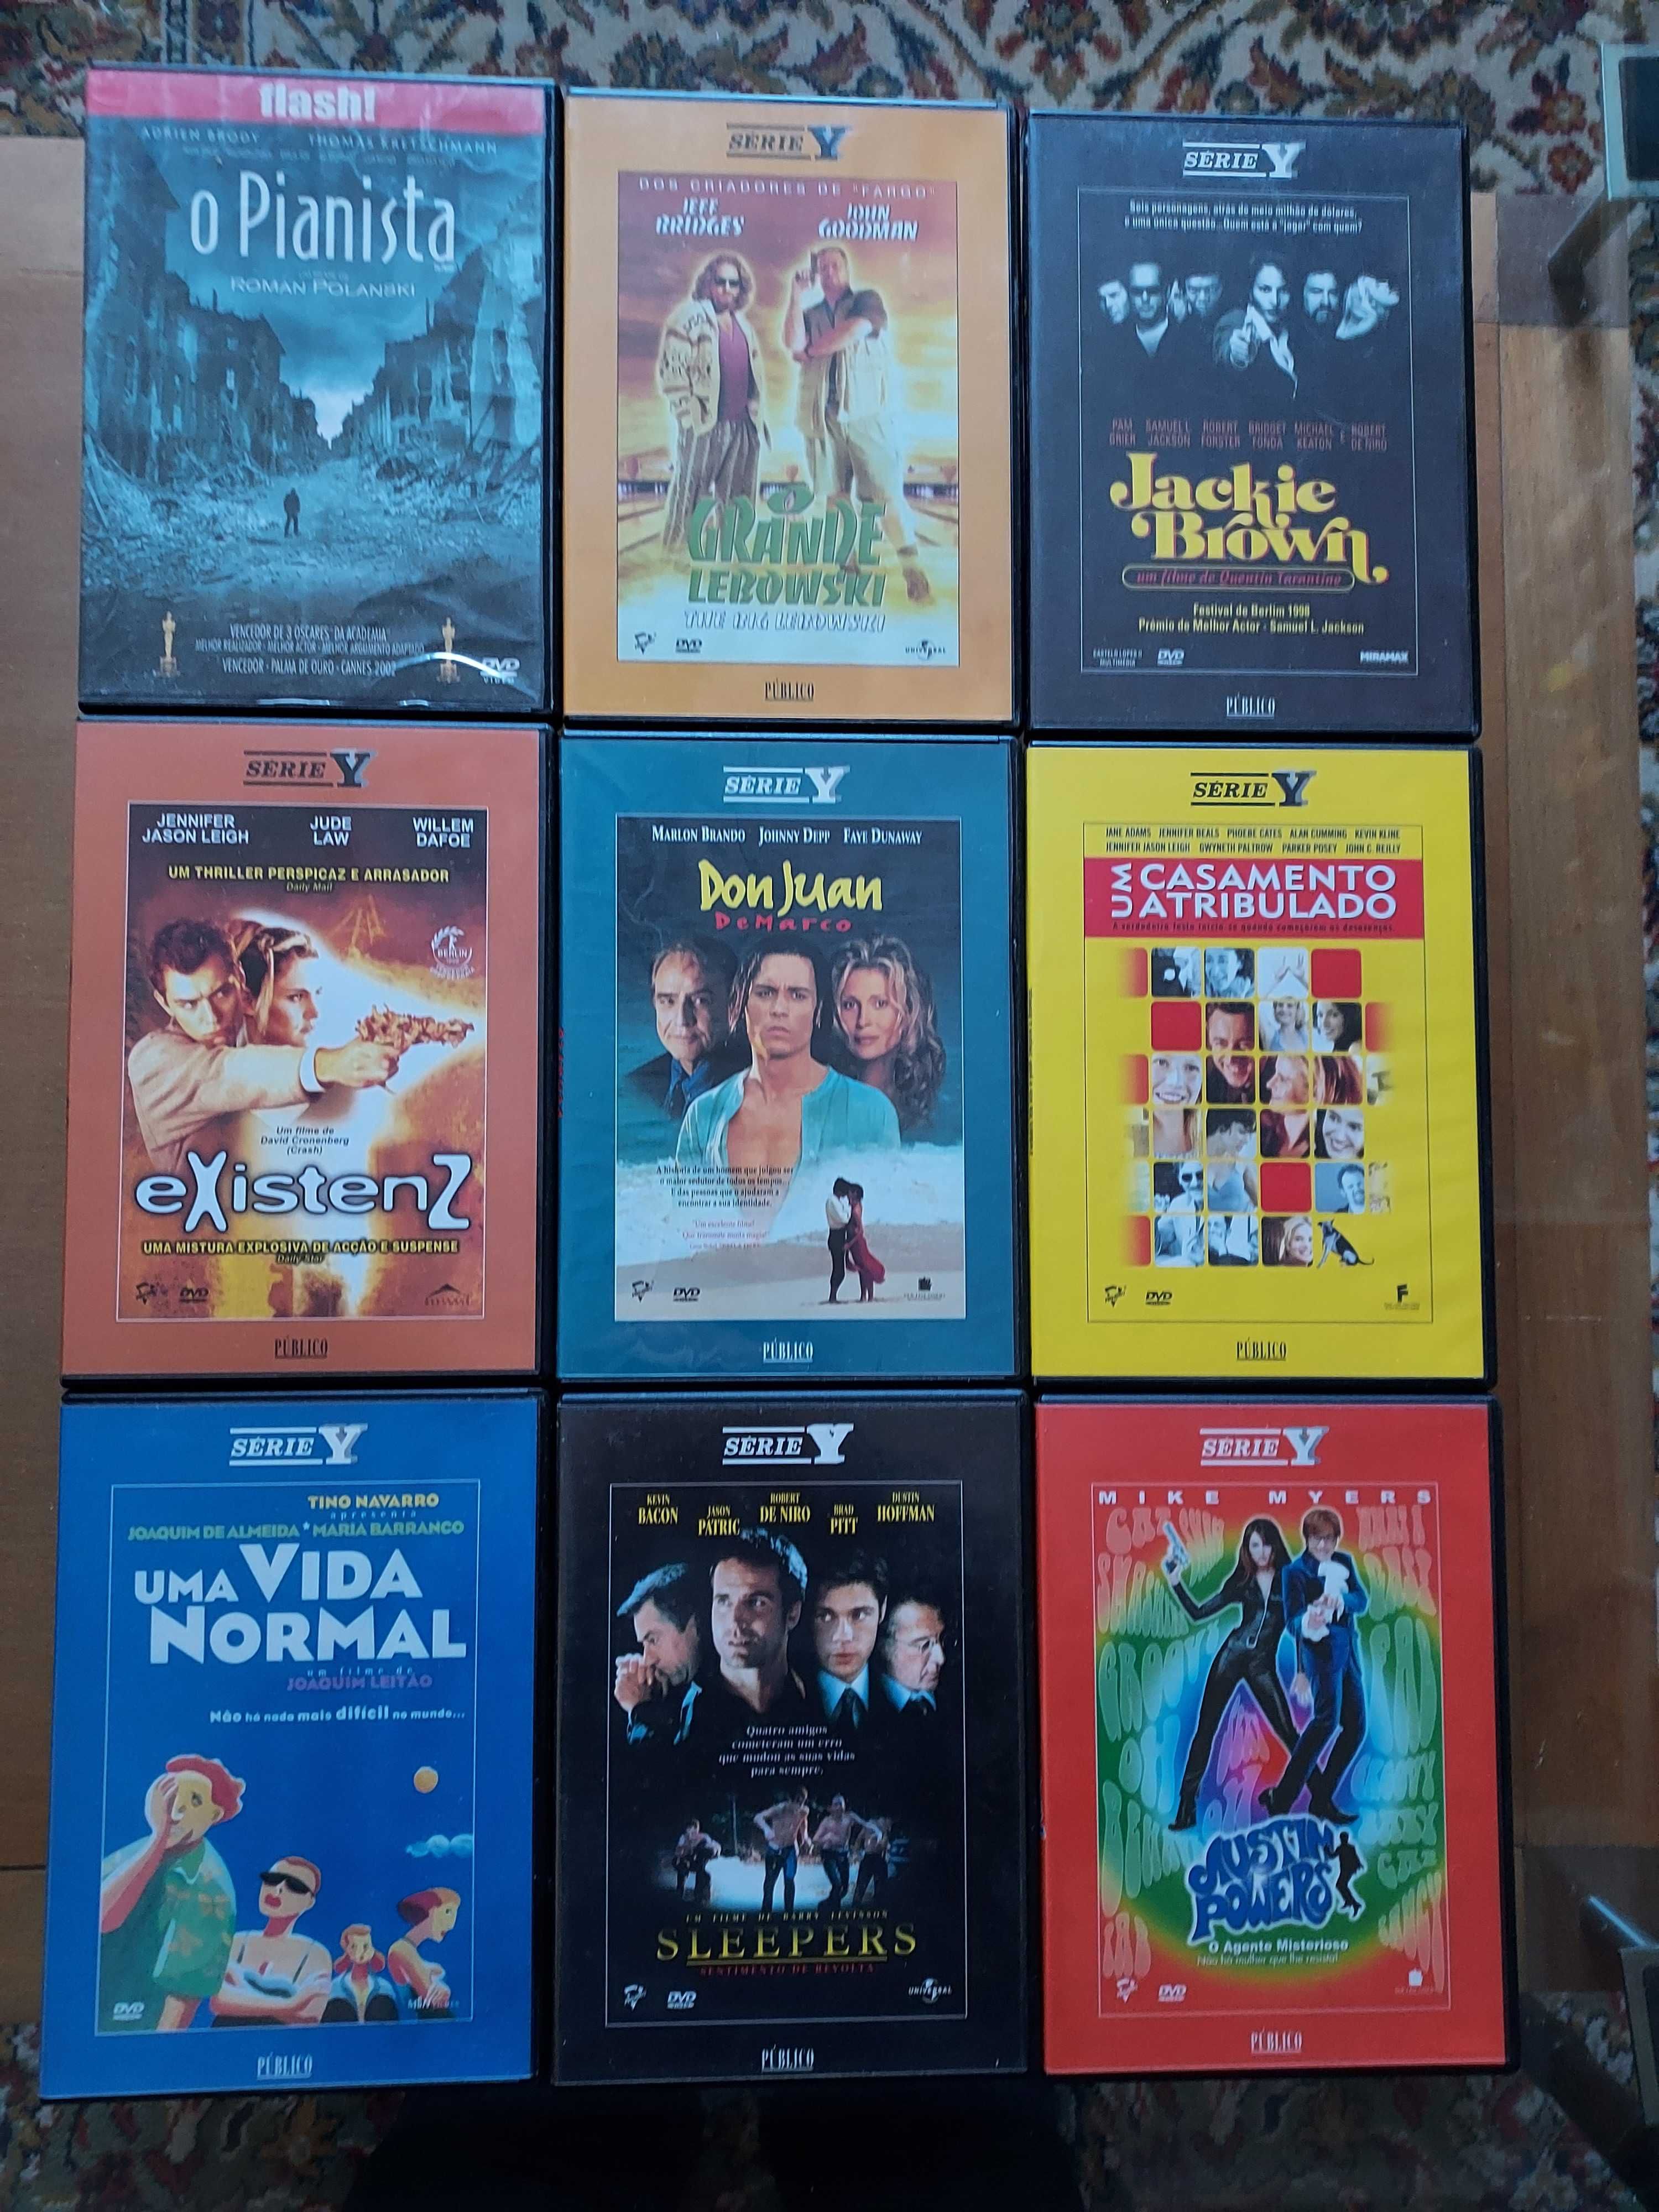 Grandes Filmes em DVD - Série Y